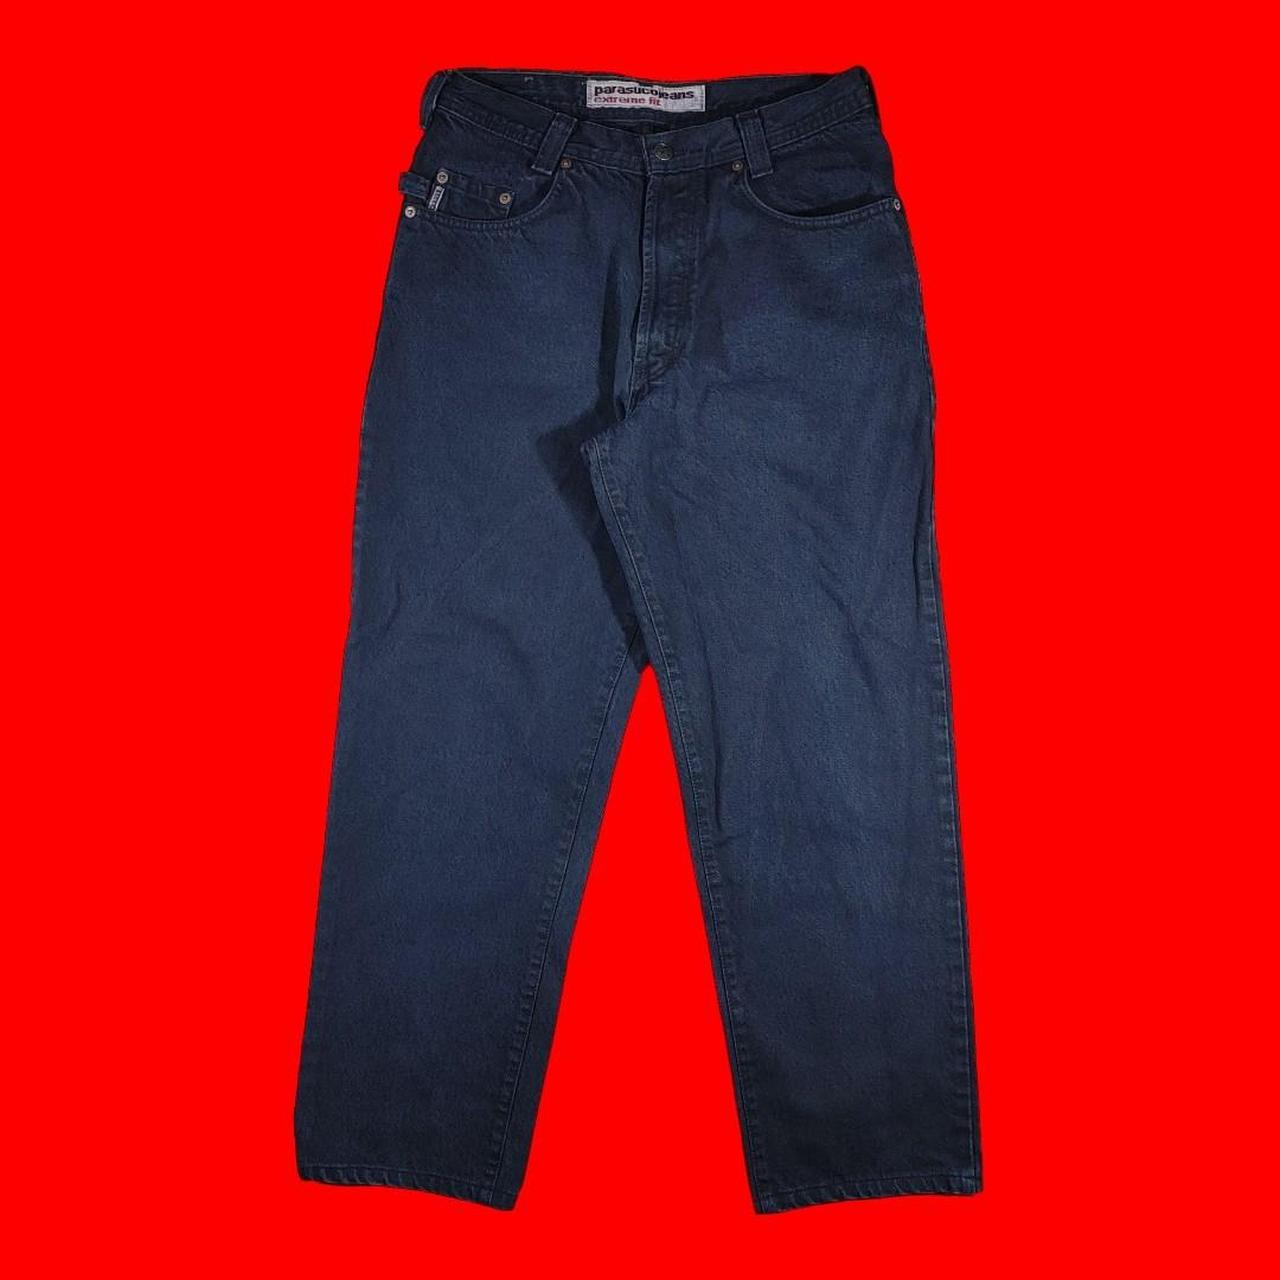 Parasuco Men's Black Jeans (2)